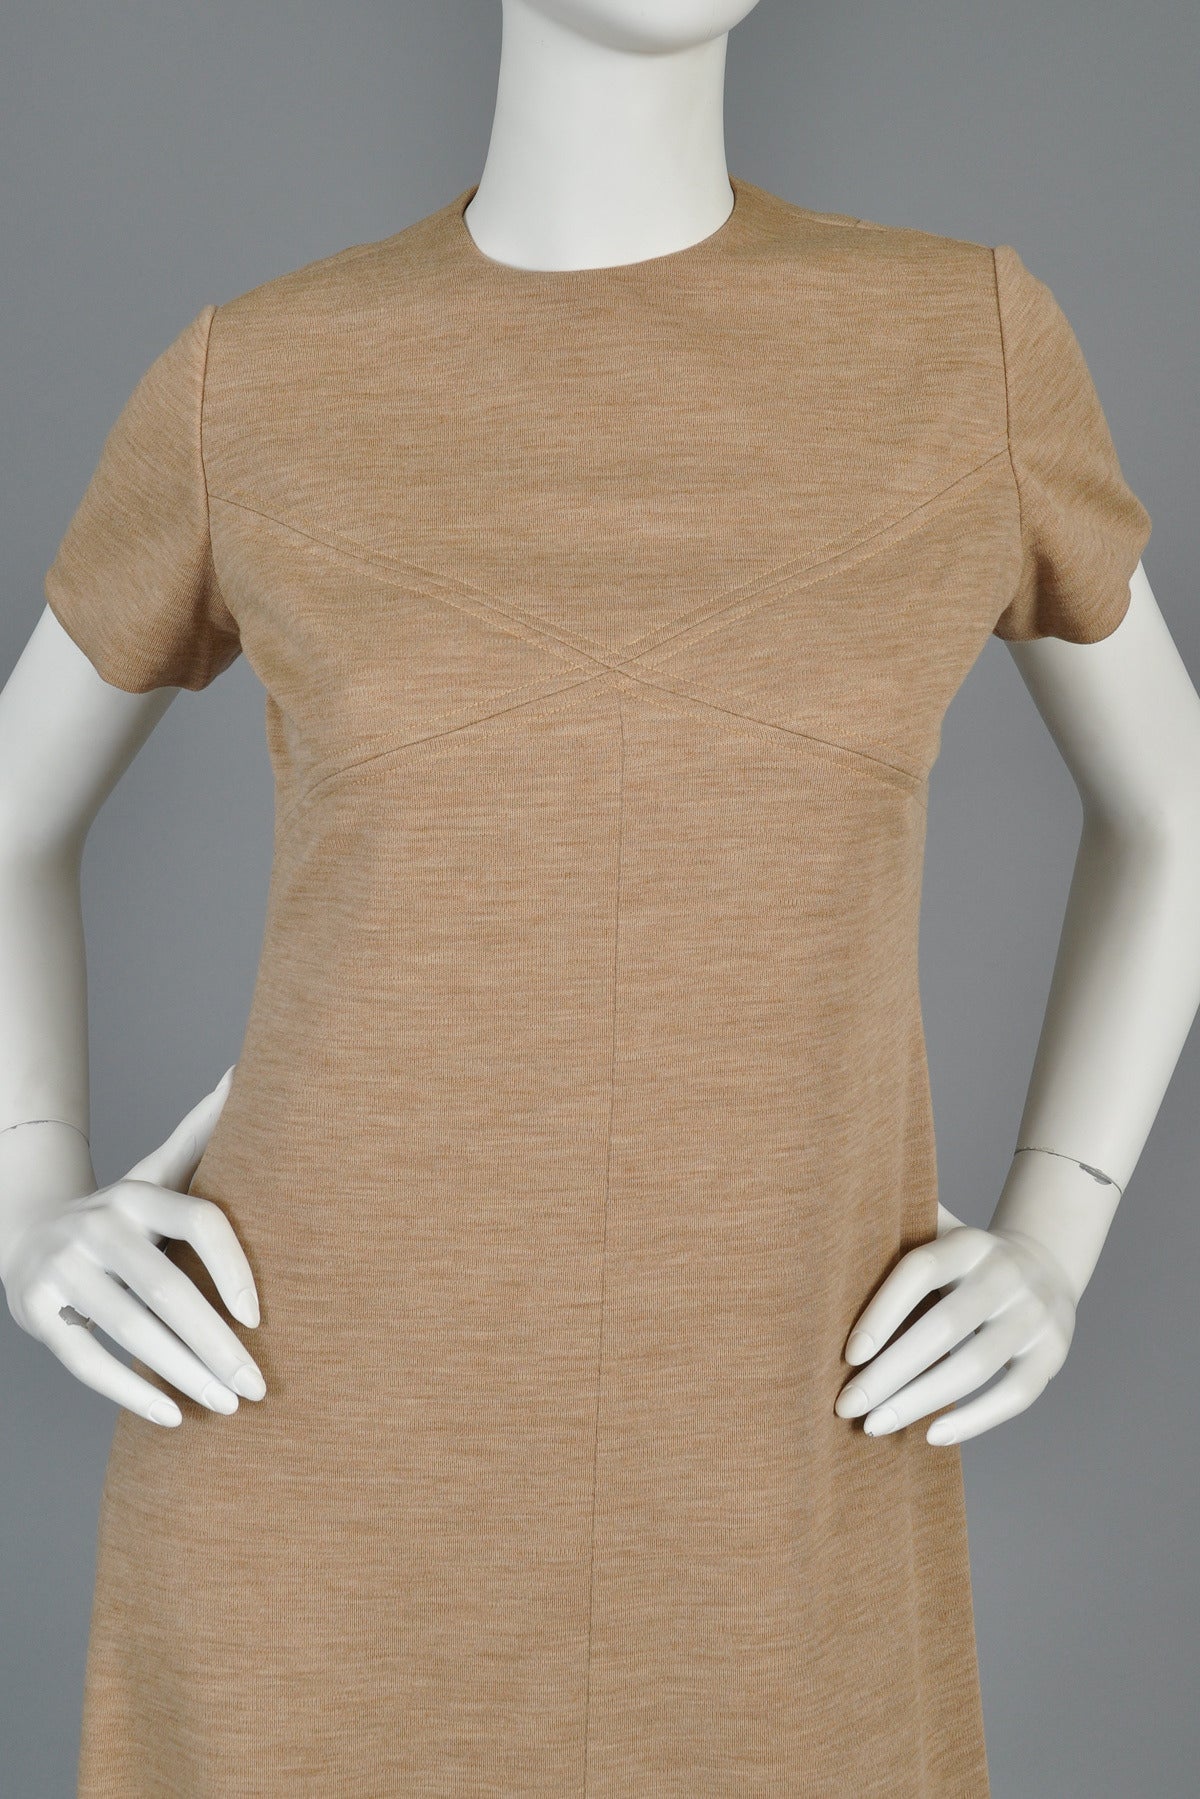 Brown Bill Blass 1960s A-Line Mocha Wool Mini Dress For Sale